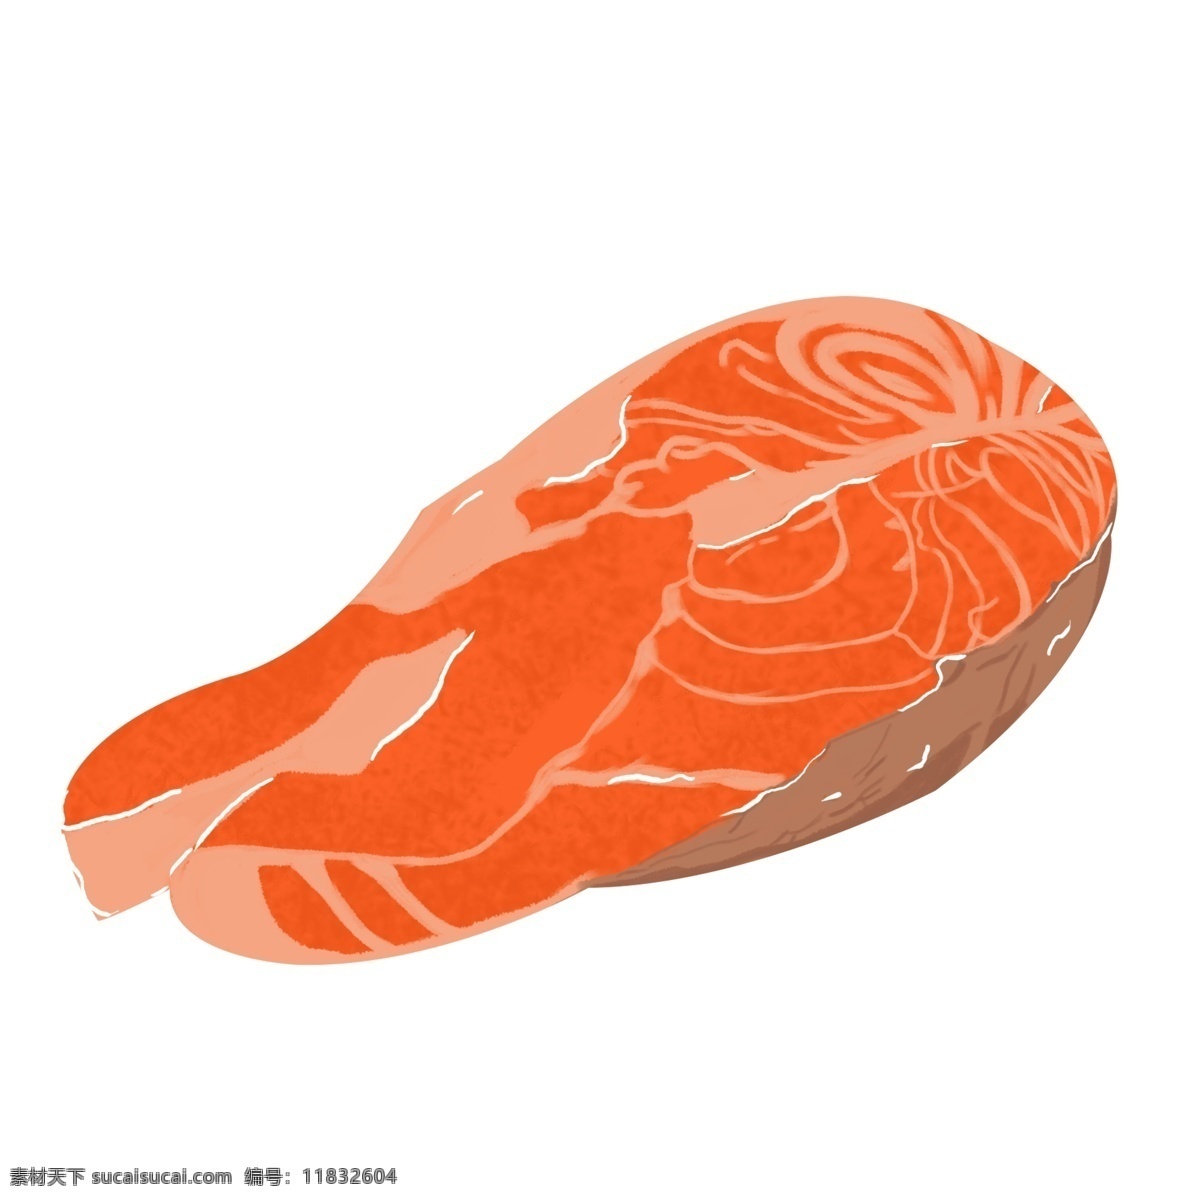 美味 食物 三文鱼 卡通 元素 生鱼片 插图 鱼肉 手绘三文鱼 寿司 三文鱼食物 美味食物 海鲜 食物插画